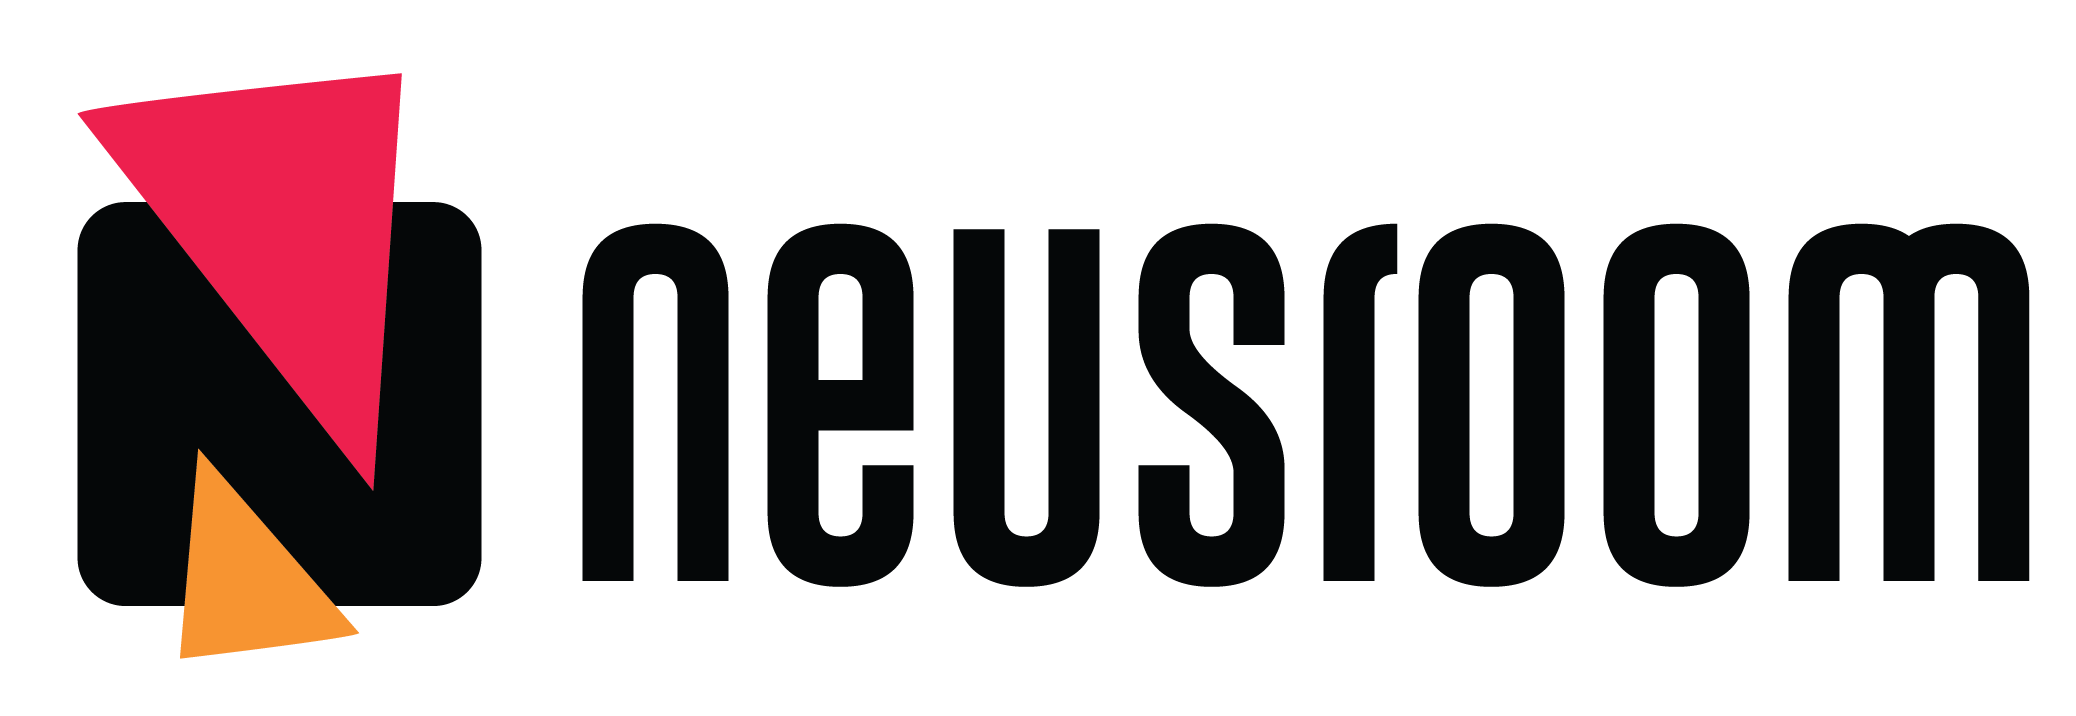 Neusroom Logo